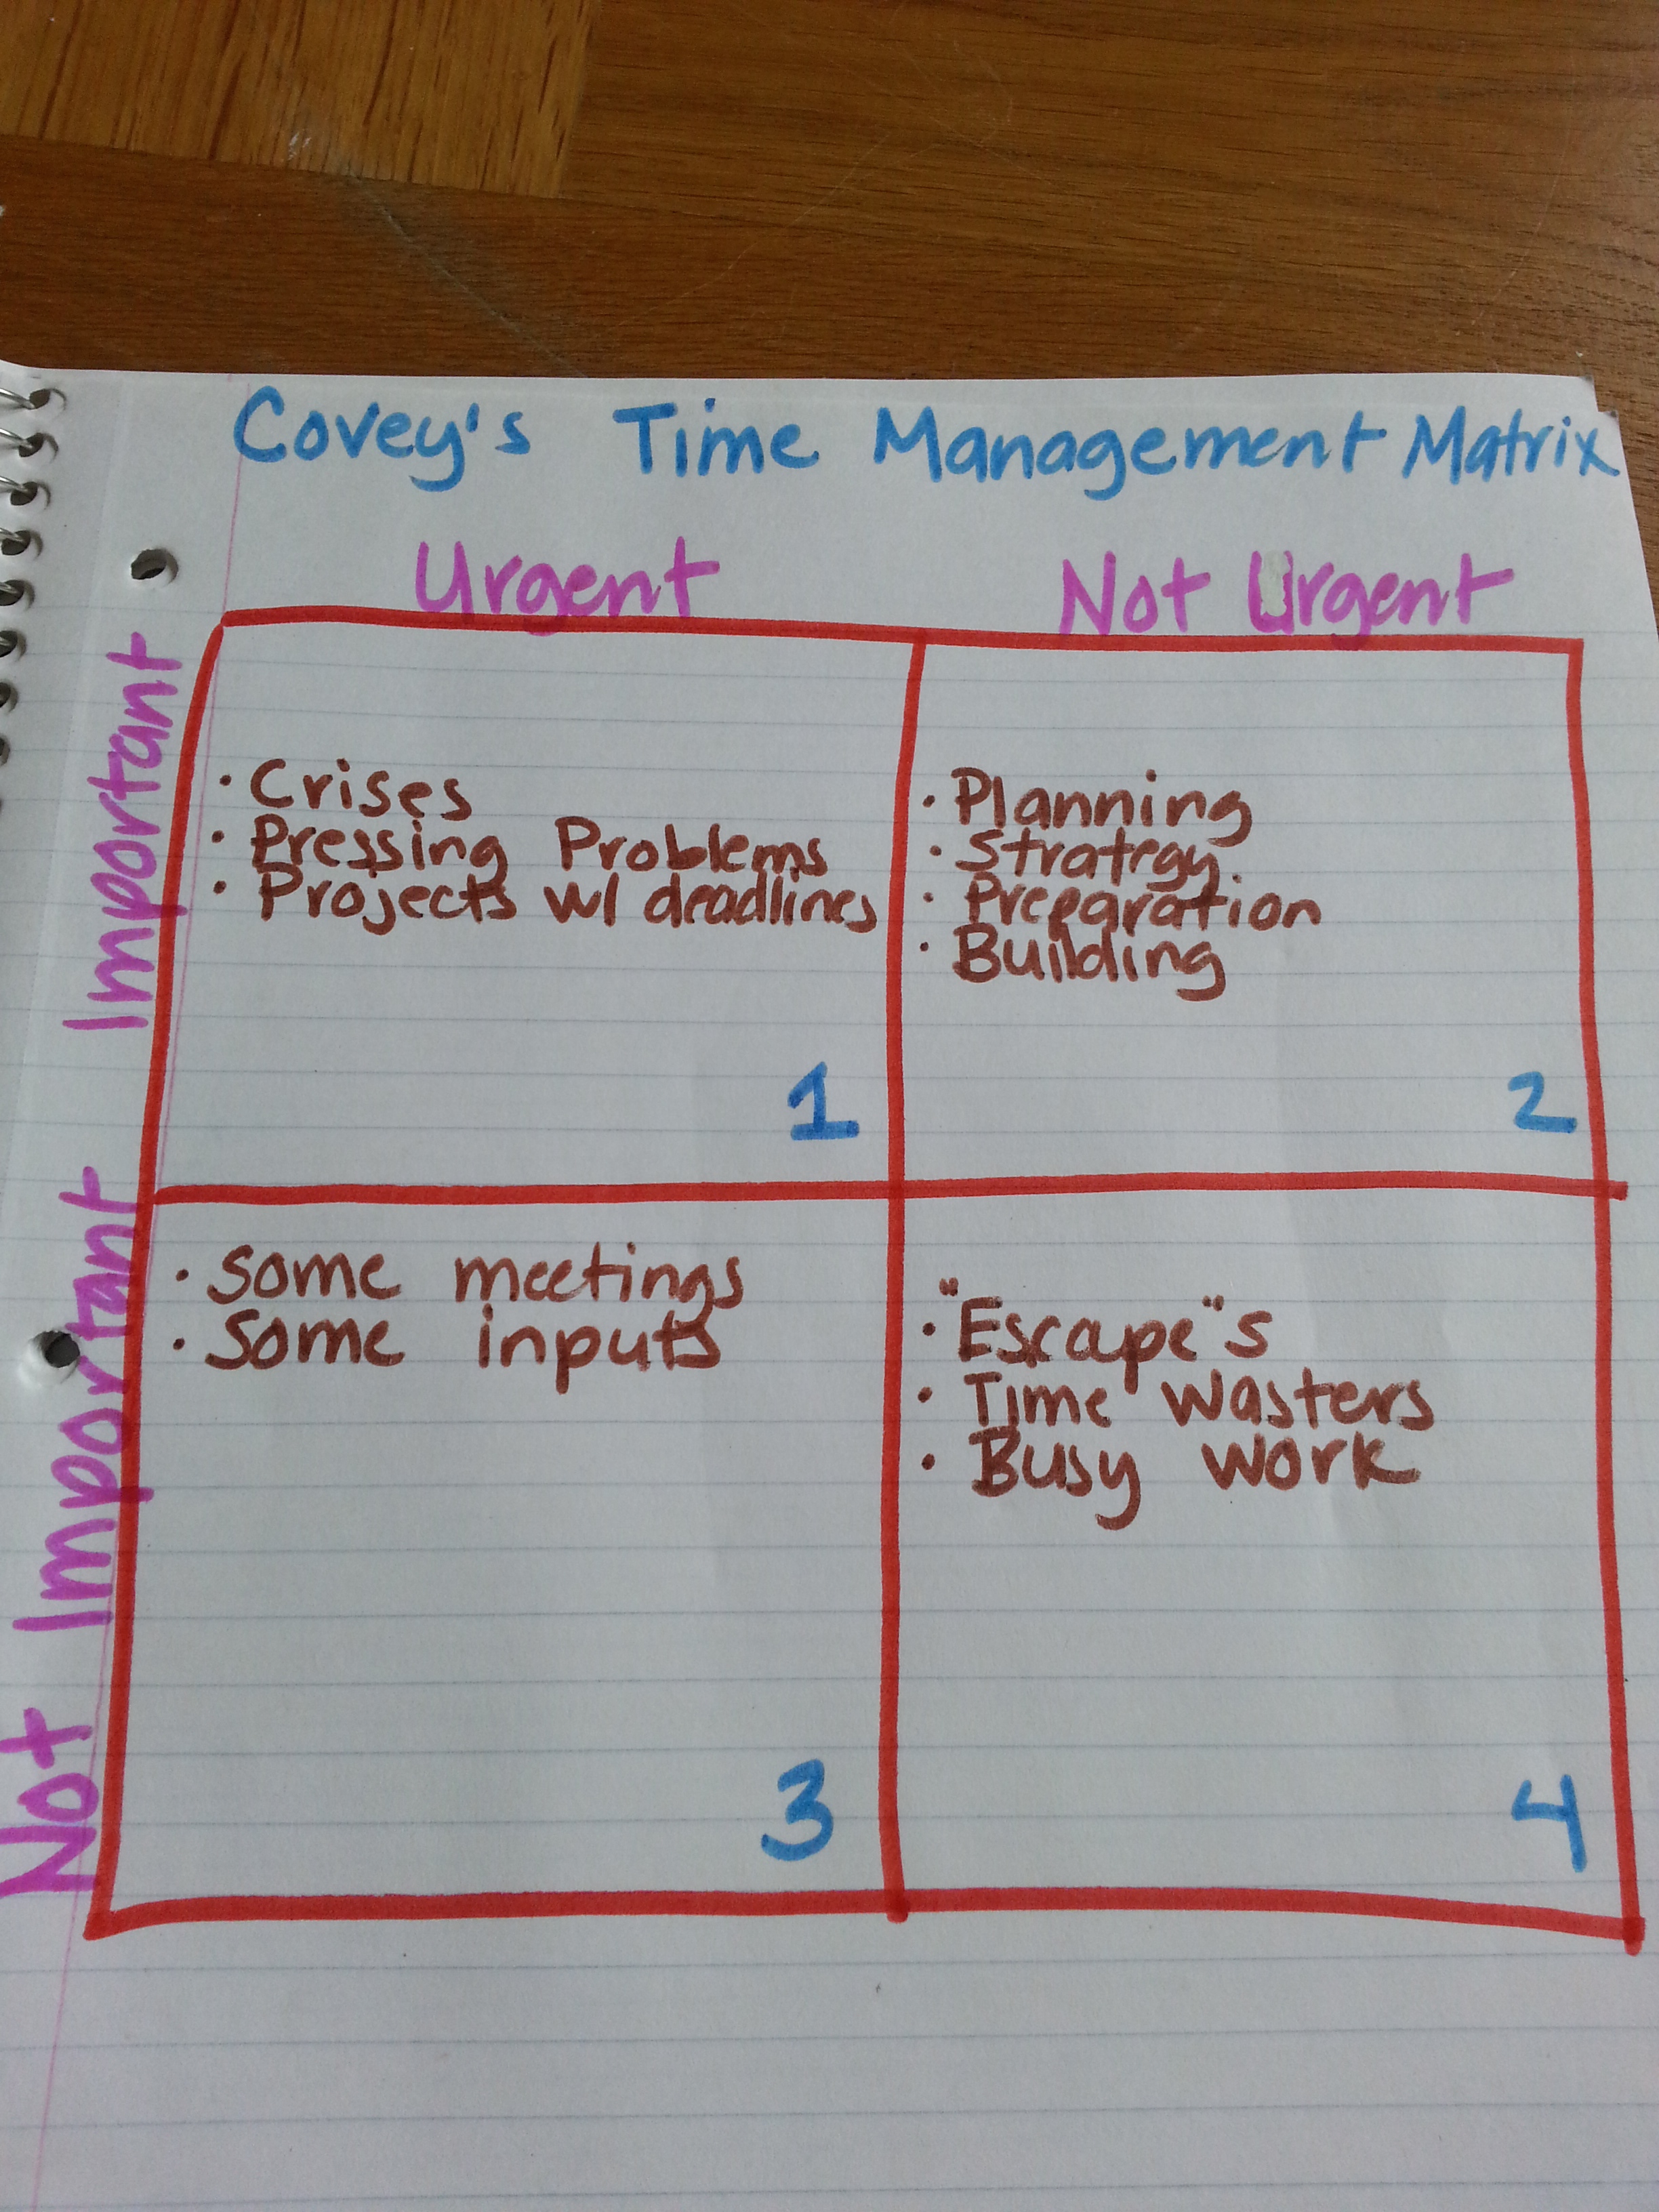 time management matrix for productivity